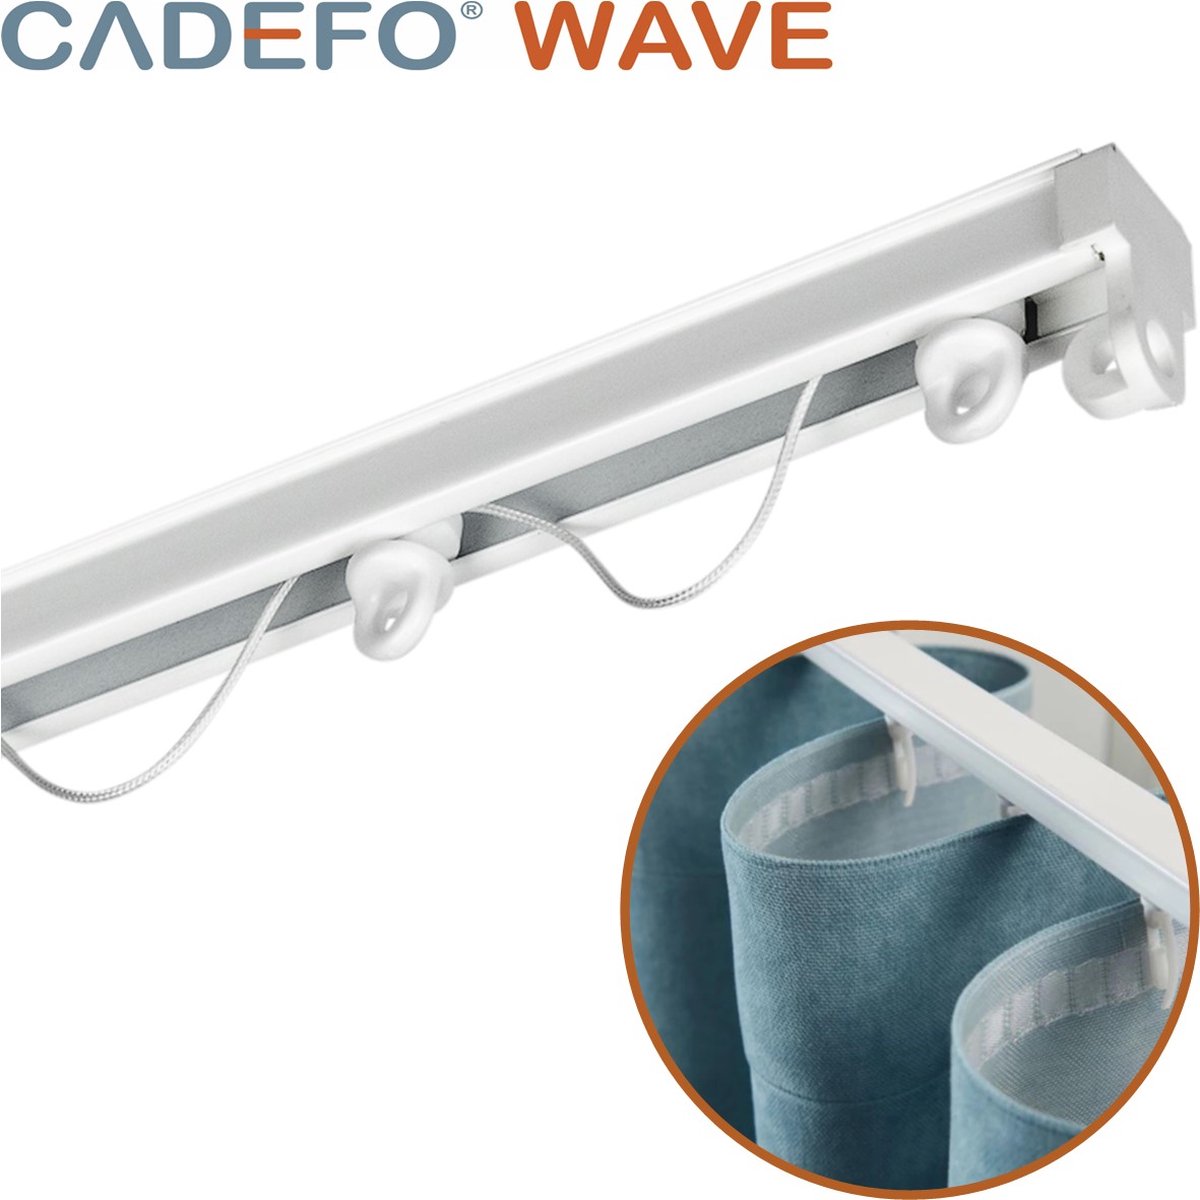 CADEFO WAVE (151 - 200 cm) Gordijnrails - Compleet op maat! - UIT 1 STUK - Leverbaar tot 6 meter - Plafondbevestiging - Lengte 170 cm